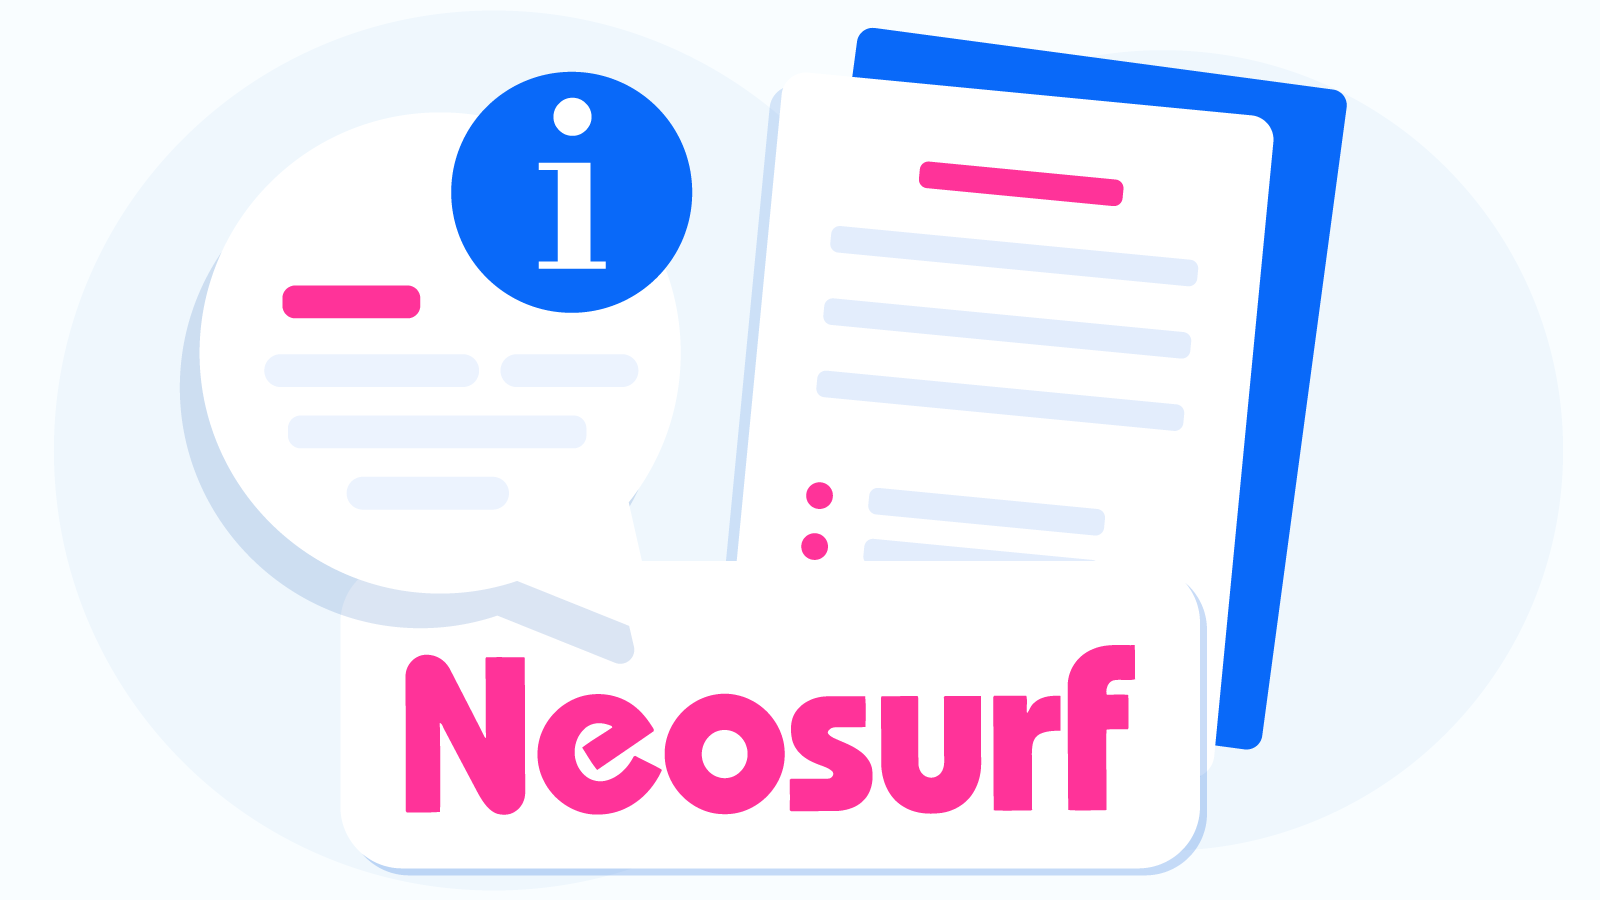 Neosurf Explained